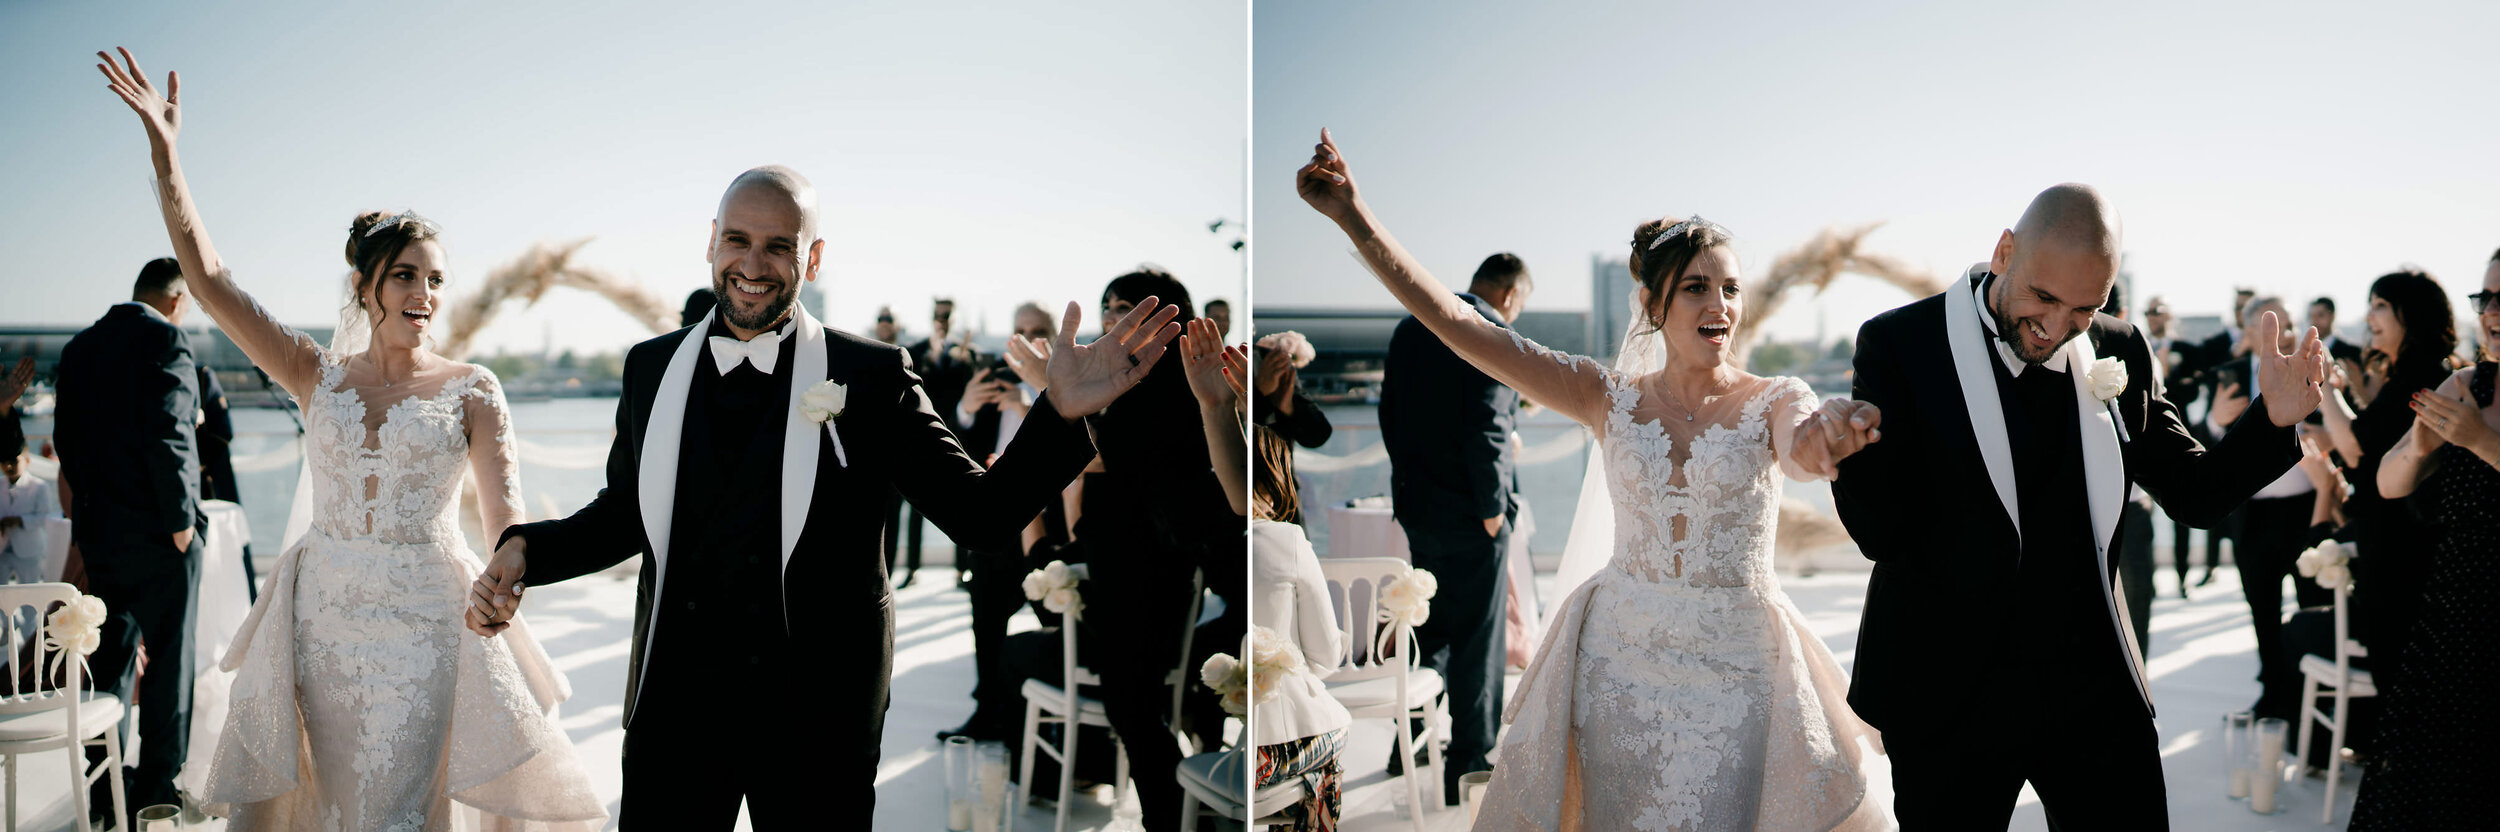 bruidsfotografie amsterdam een foto van bruidspaar pas getrouwd